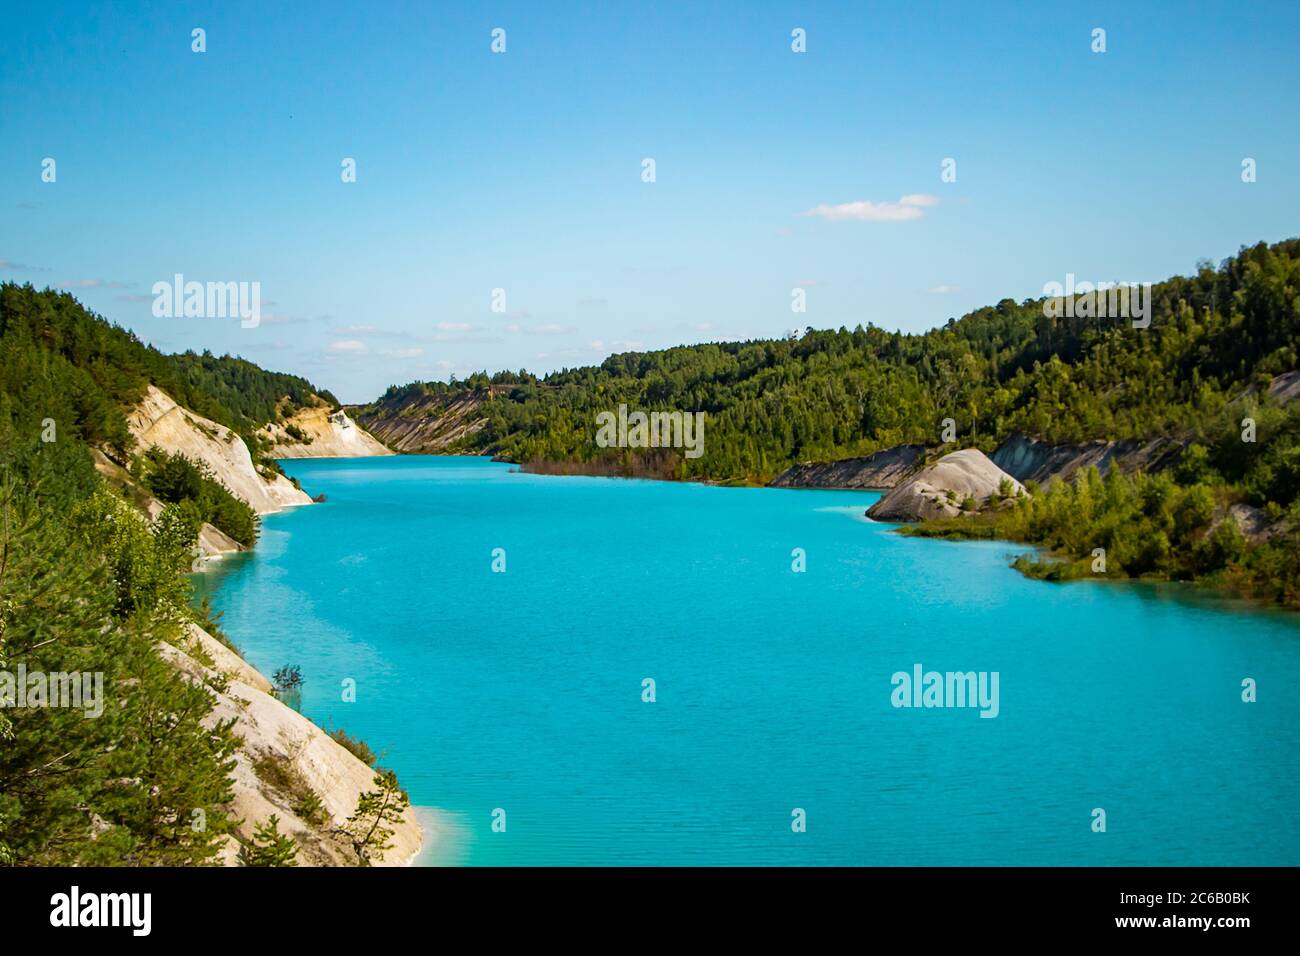 Lac inhabituel avec eau turquoise dans le cratère. Carrière de craie de la côte rocheuse au Bélarus. Jour d'été ensoleillé. Banque D'Images